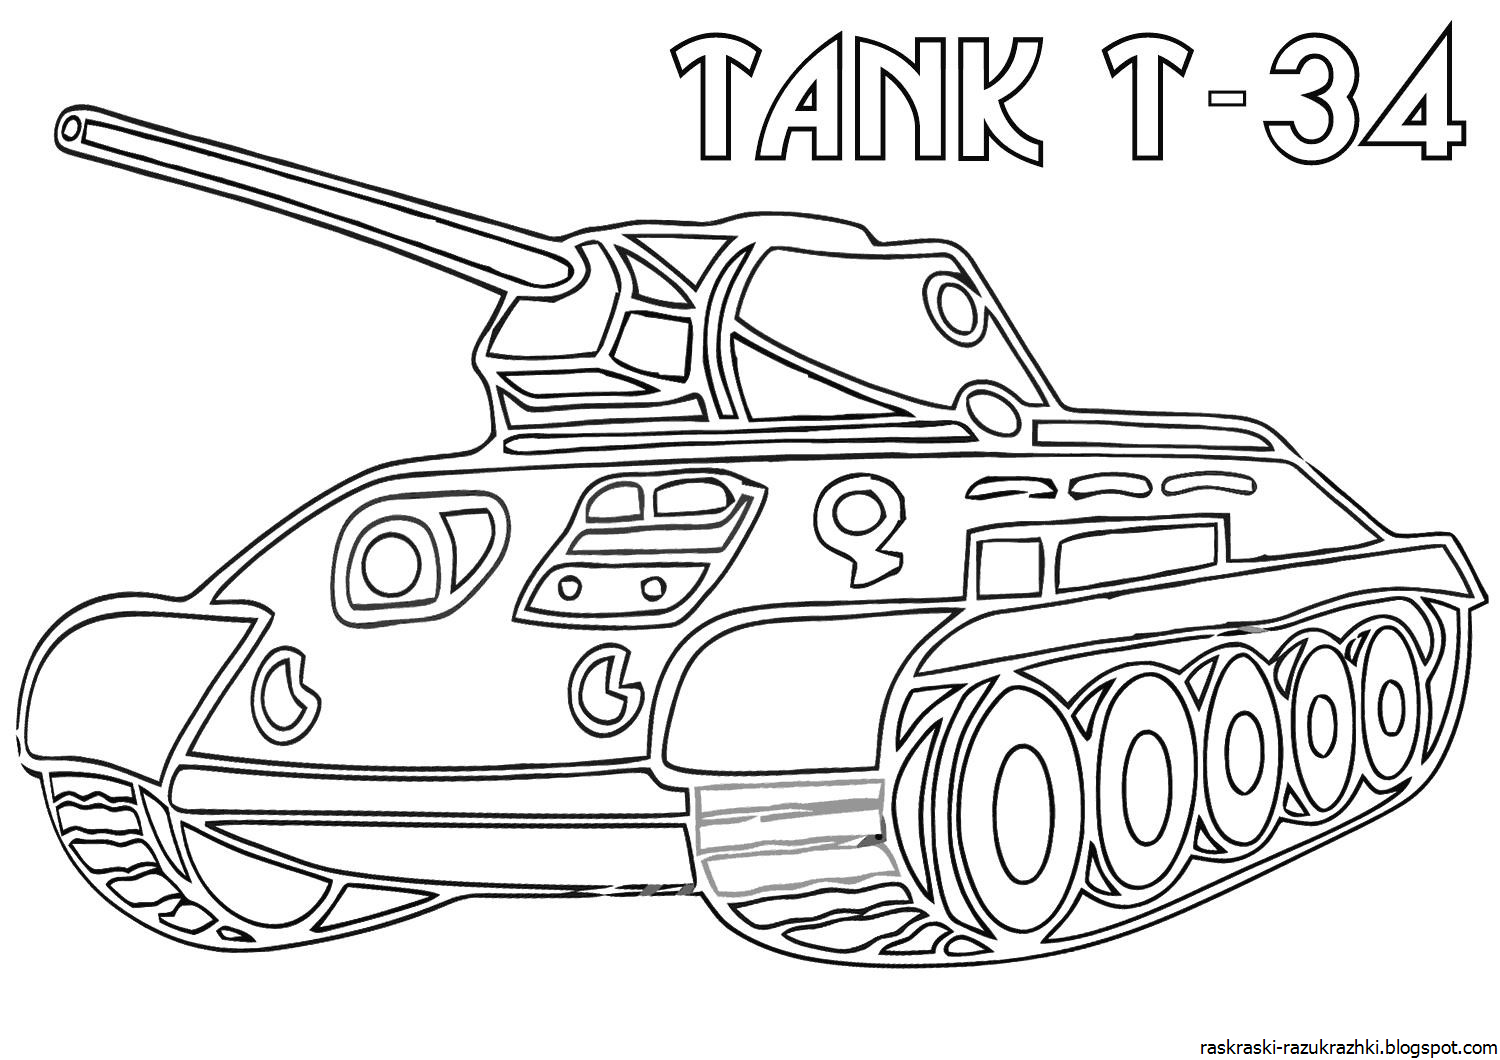 Рисунок танка на 9 мая. Раскраска танк т 34. Разукрашки для детей танк т 34. Рисунок танк т-34 для раскрашивания для детей. Раскраска танк т34 Военная техника.